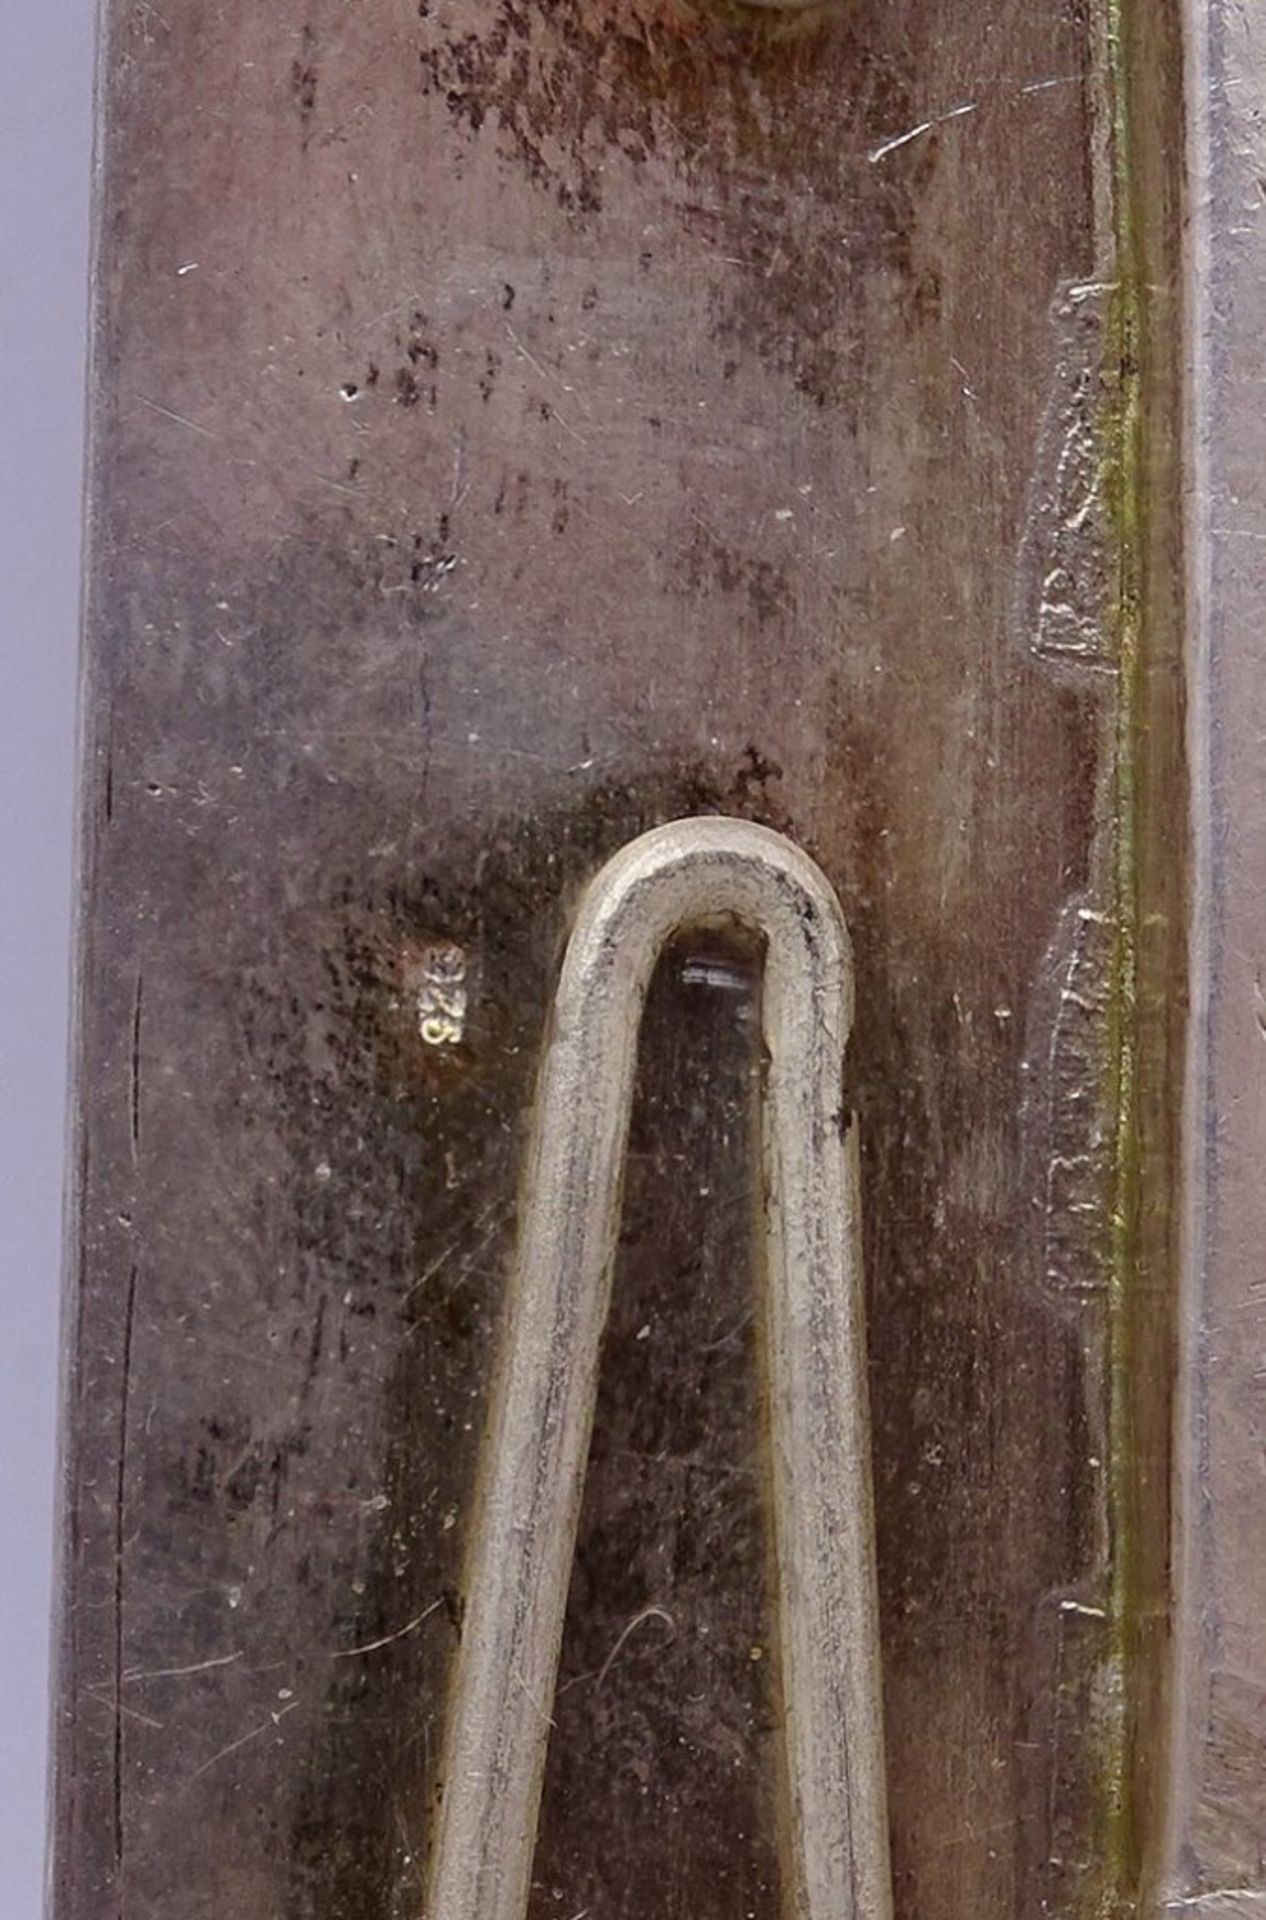 Tischfoto Rahmen in Sterling Silber mit Koralle und türkise,17,5x13,5cm,mit Glaseinsatz,Gew. - Bild 5 aus 5